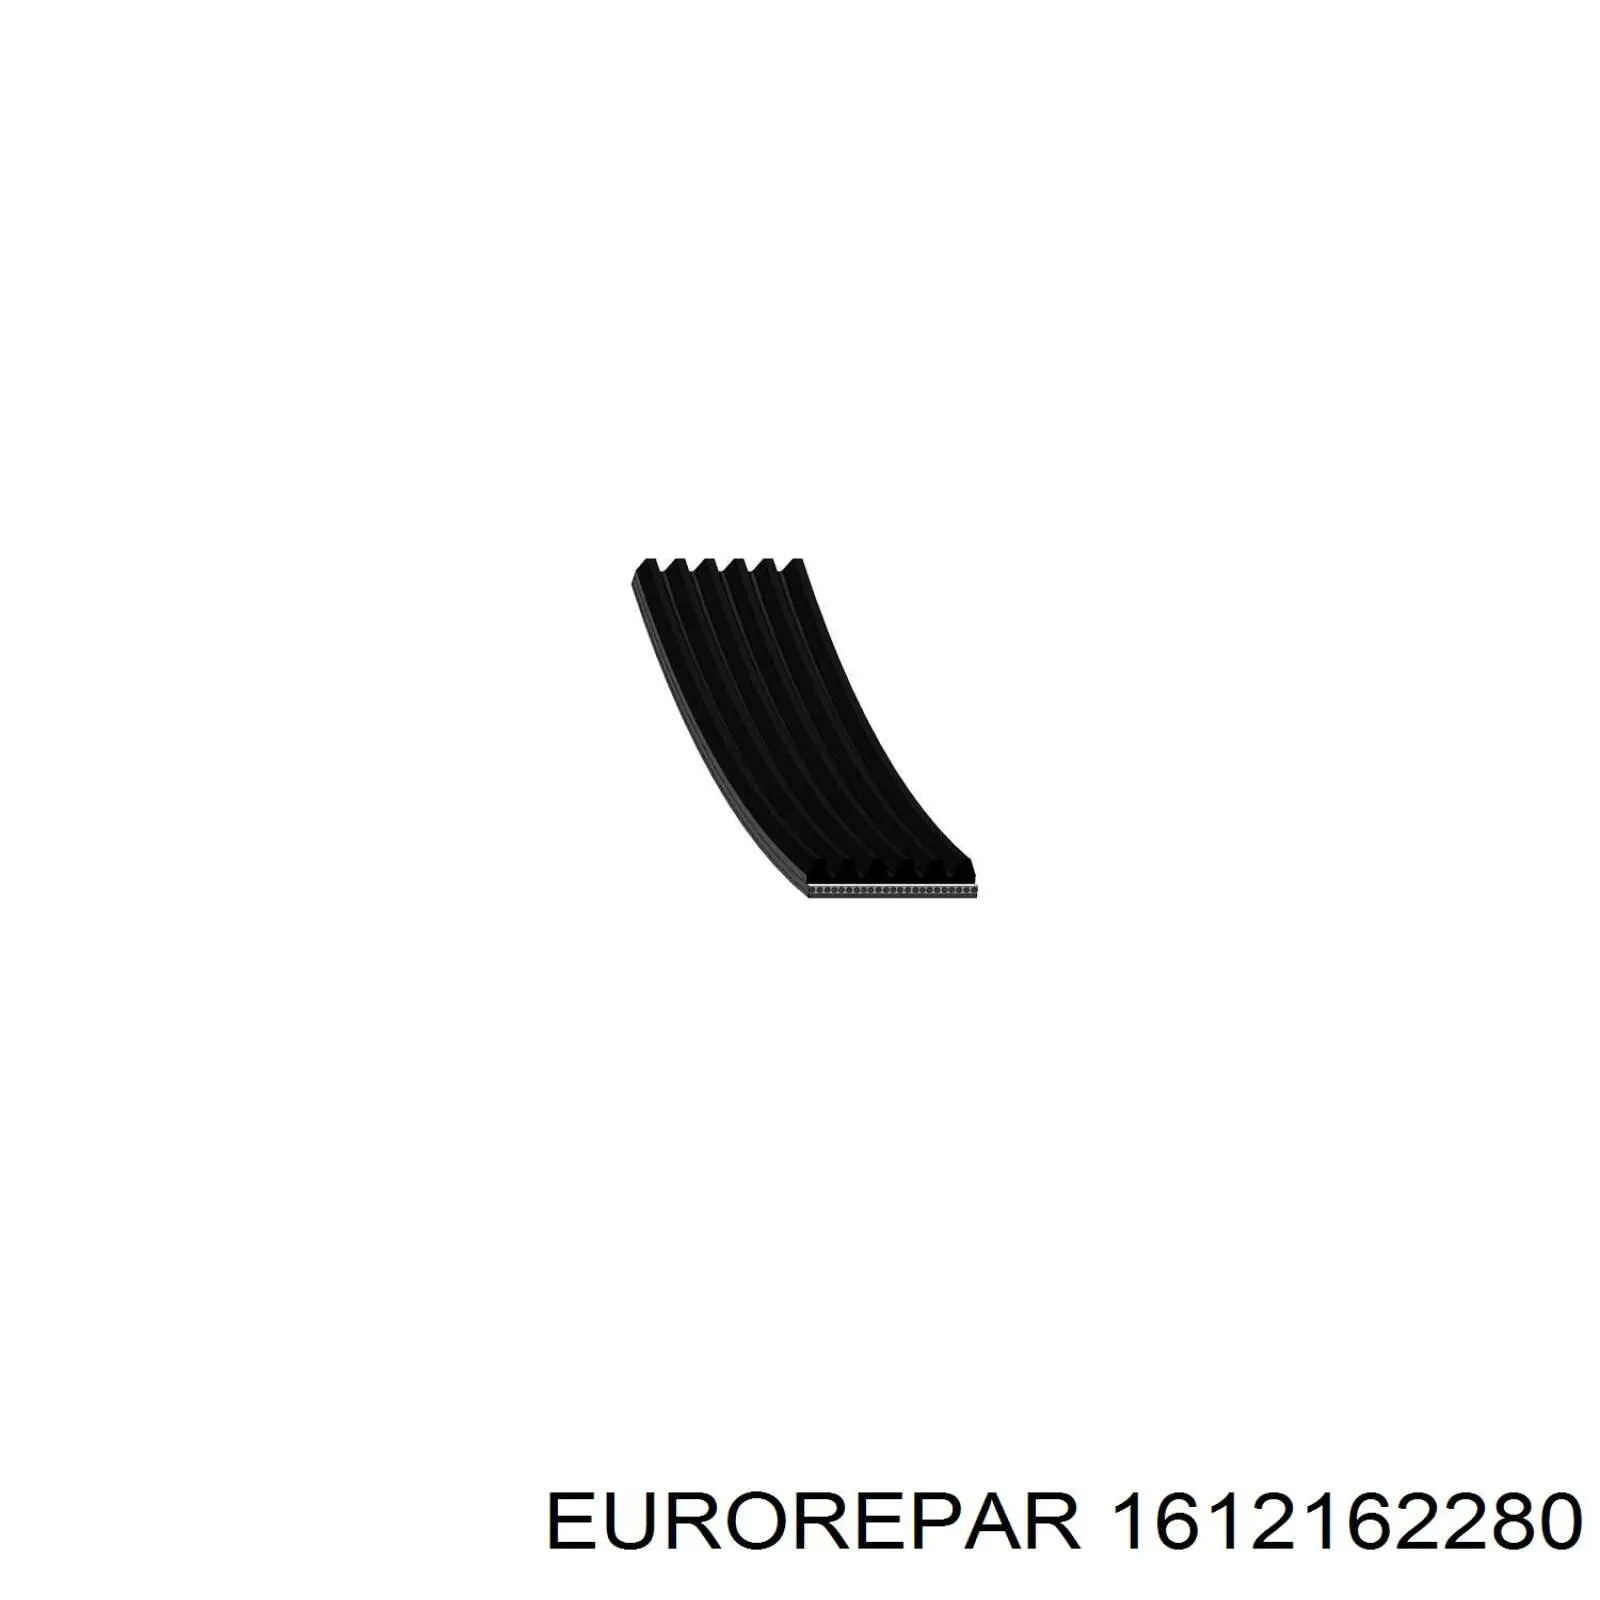 1612162280 Eurorepar correa trapezoidal